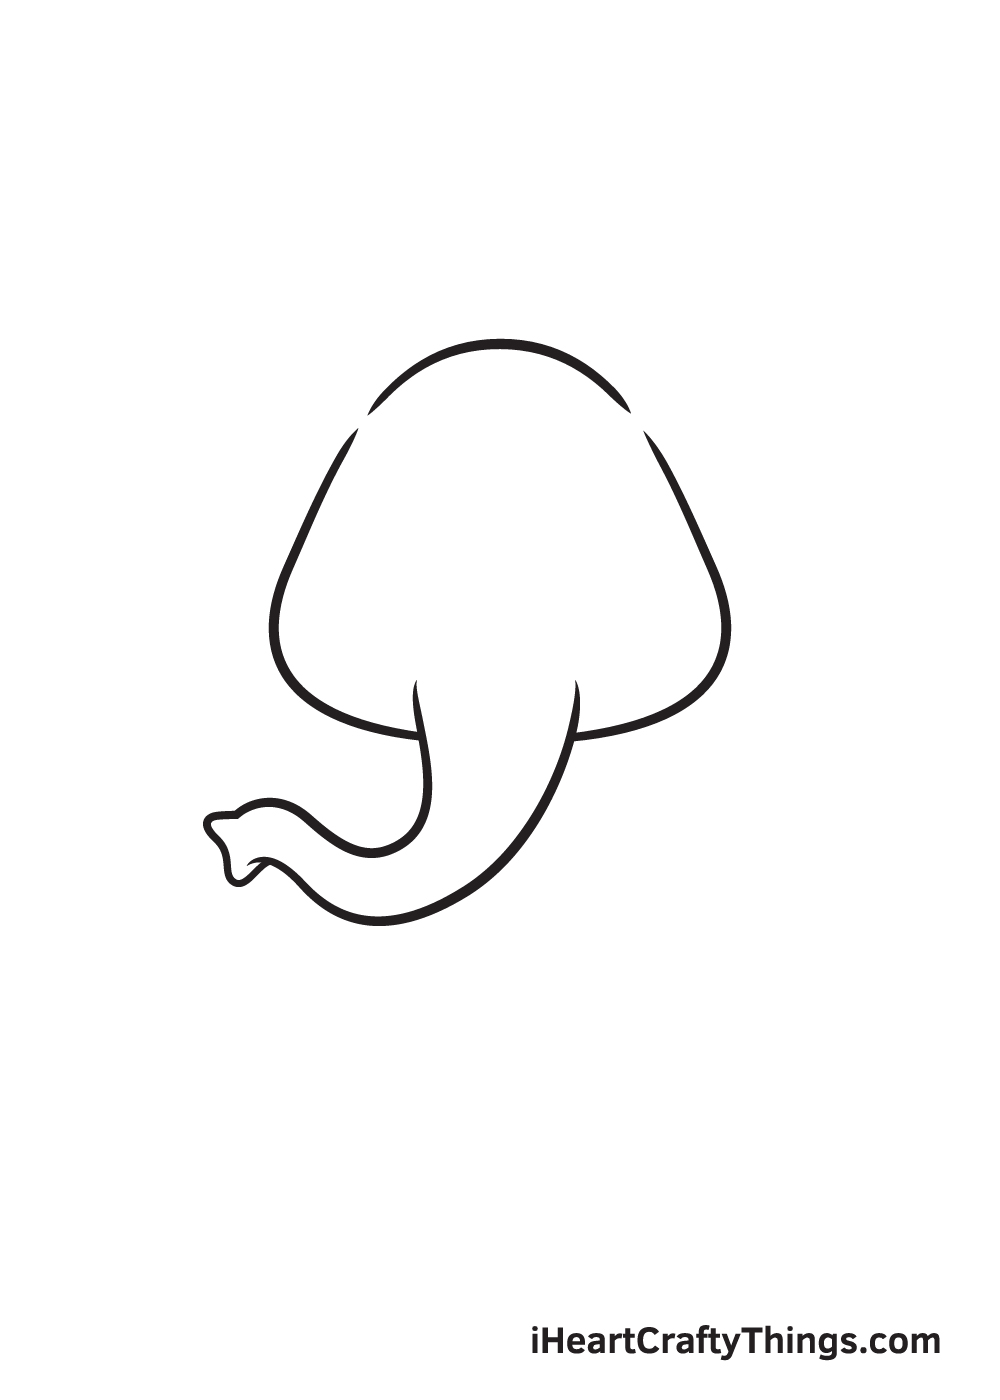 Cách vẽ con voi theo một cách đơn giản